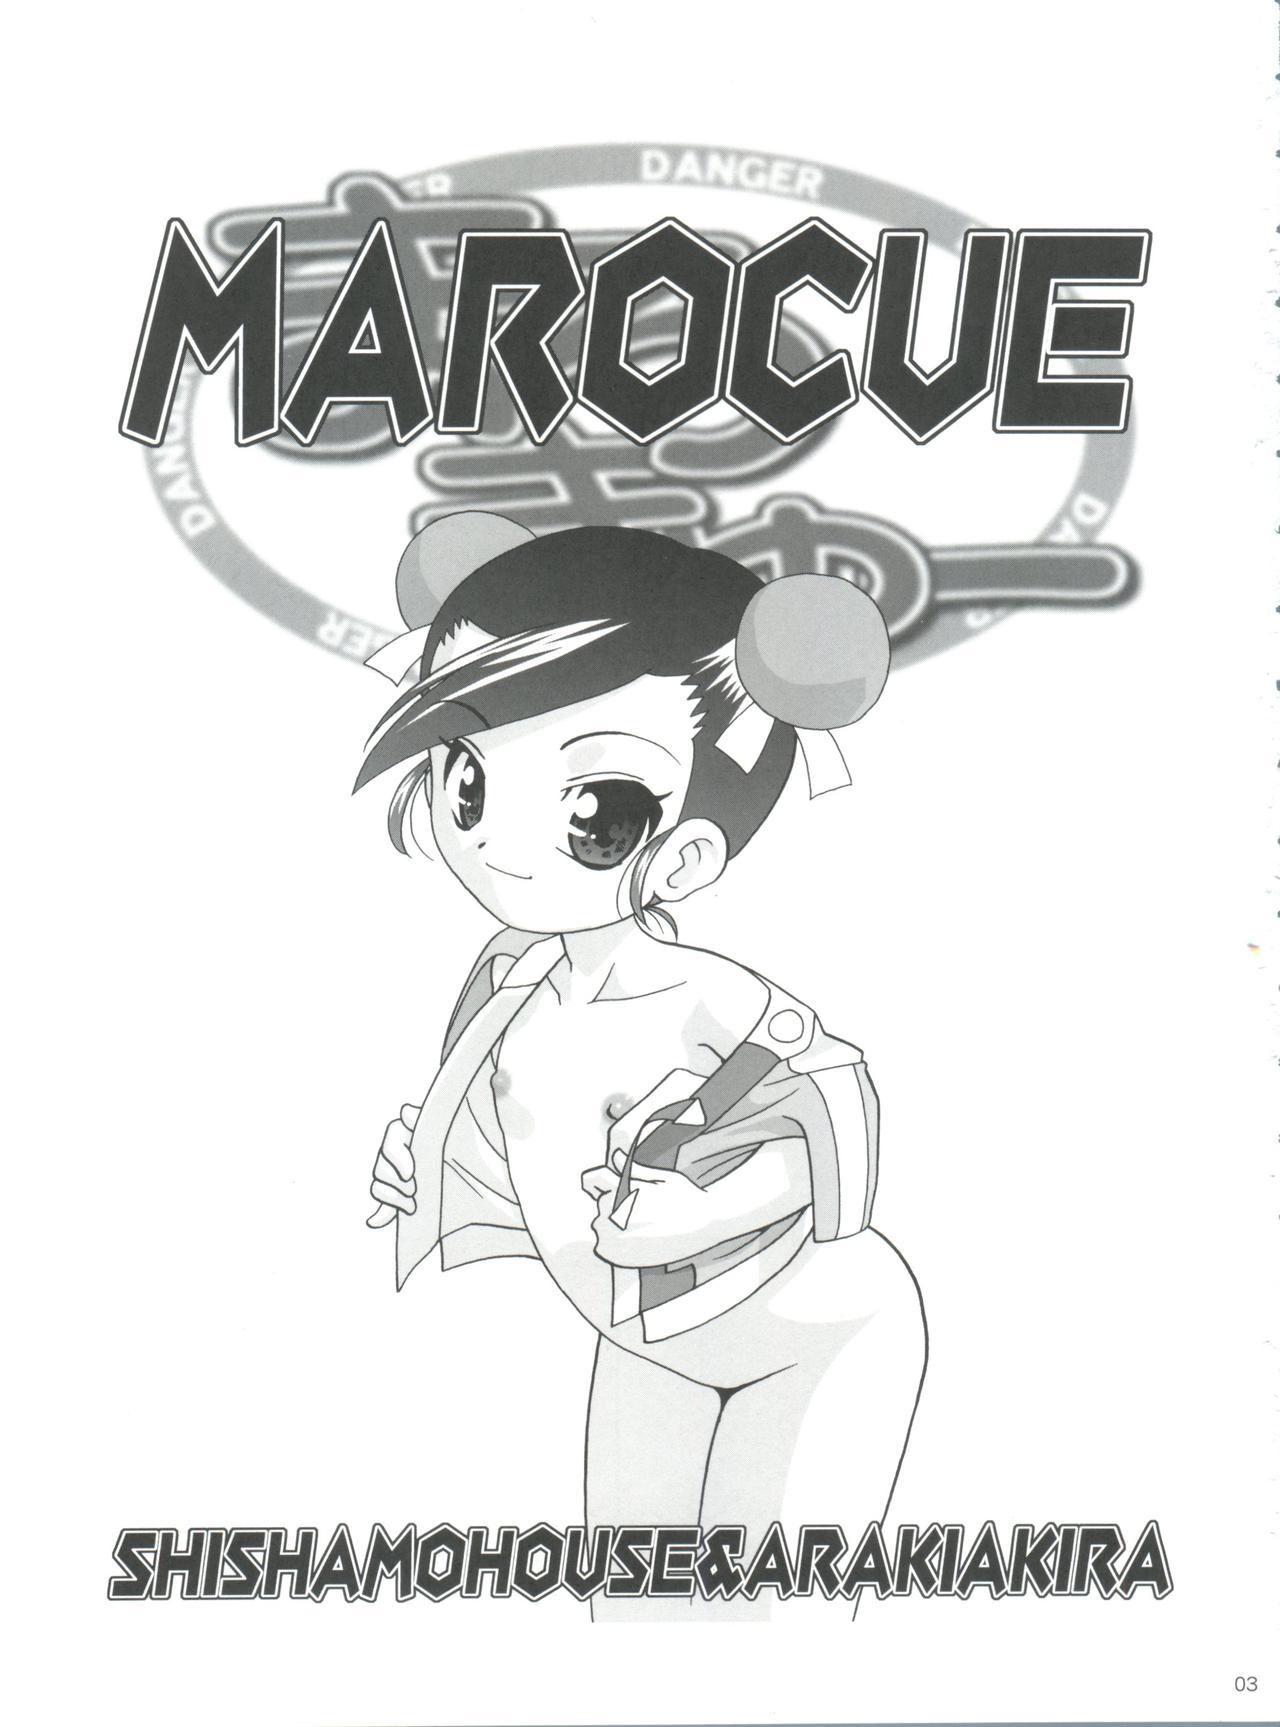 MaRoCue 1